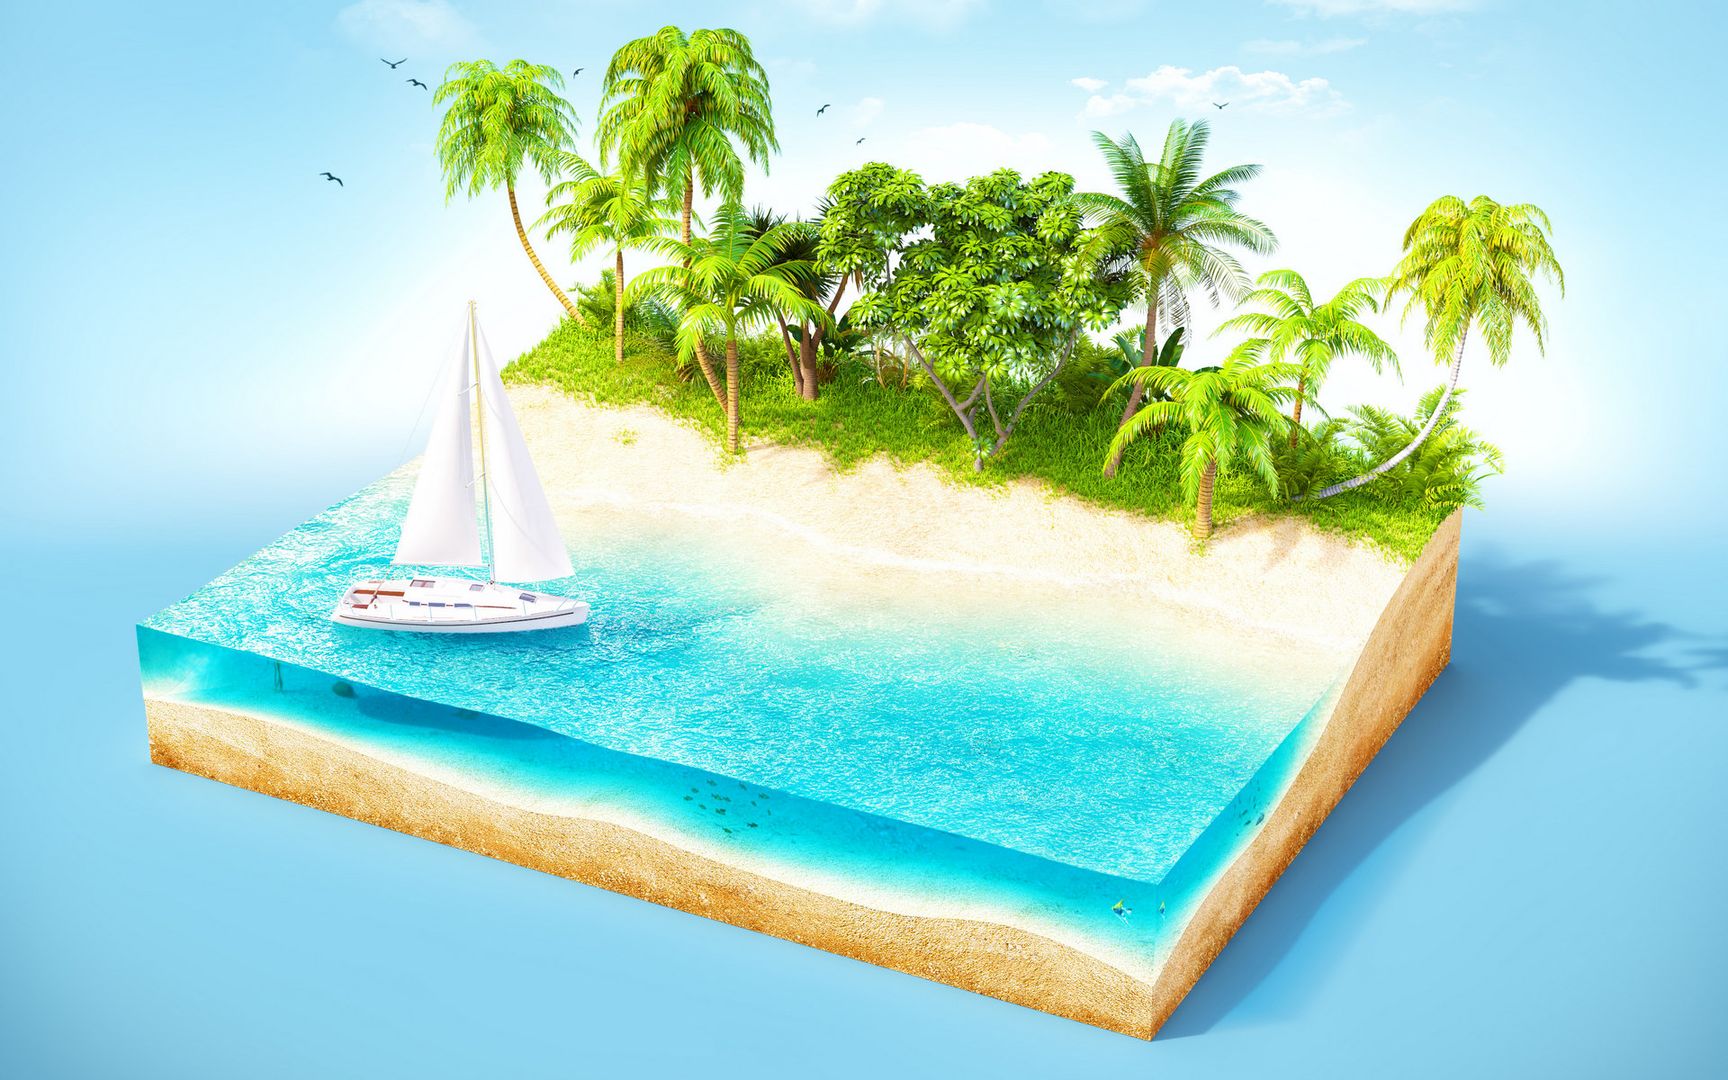 3D立体小岛绿荫椰树唯美风景创意设计大图